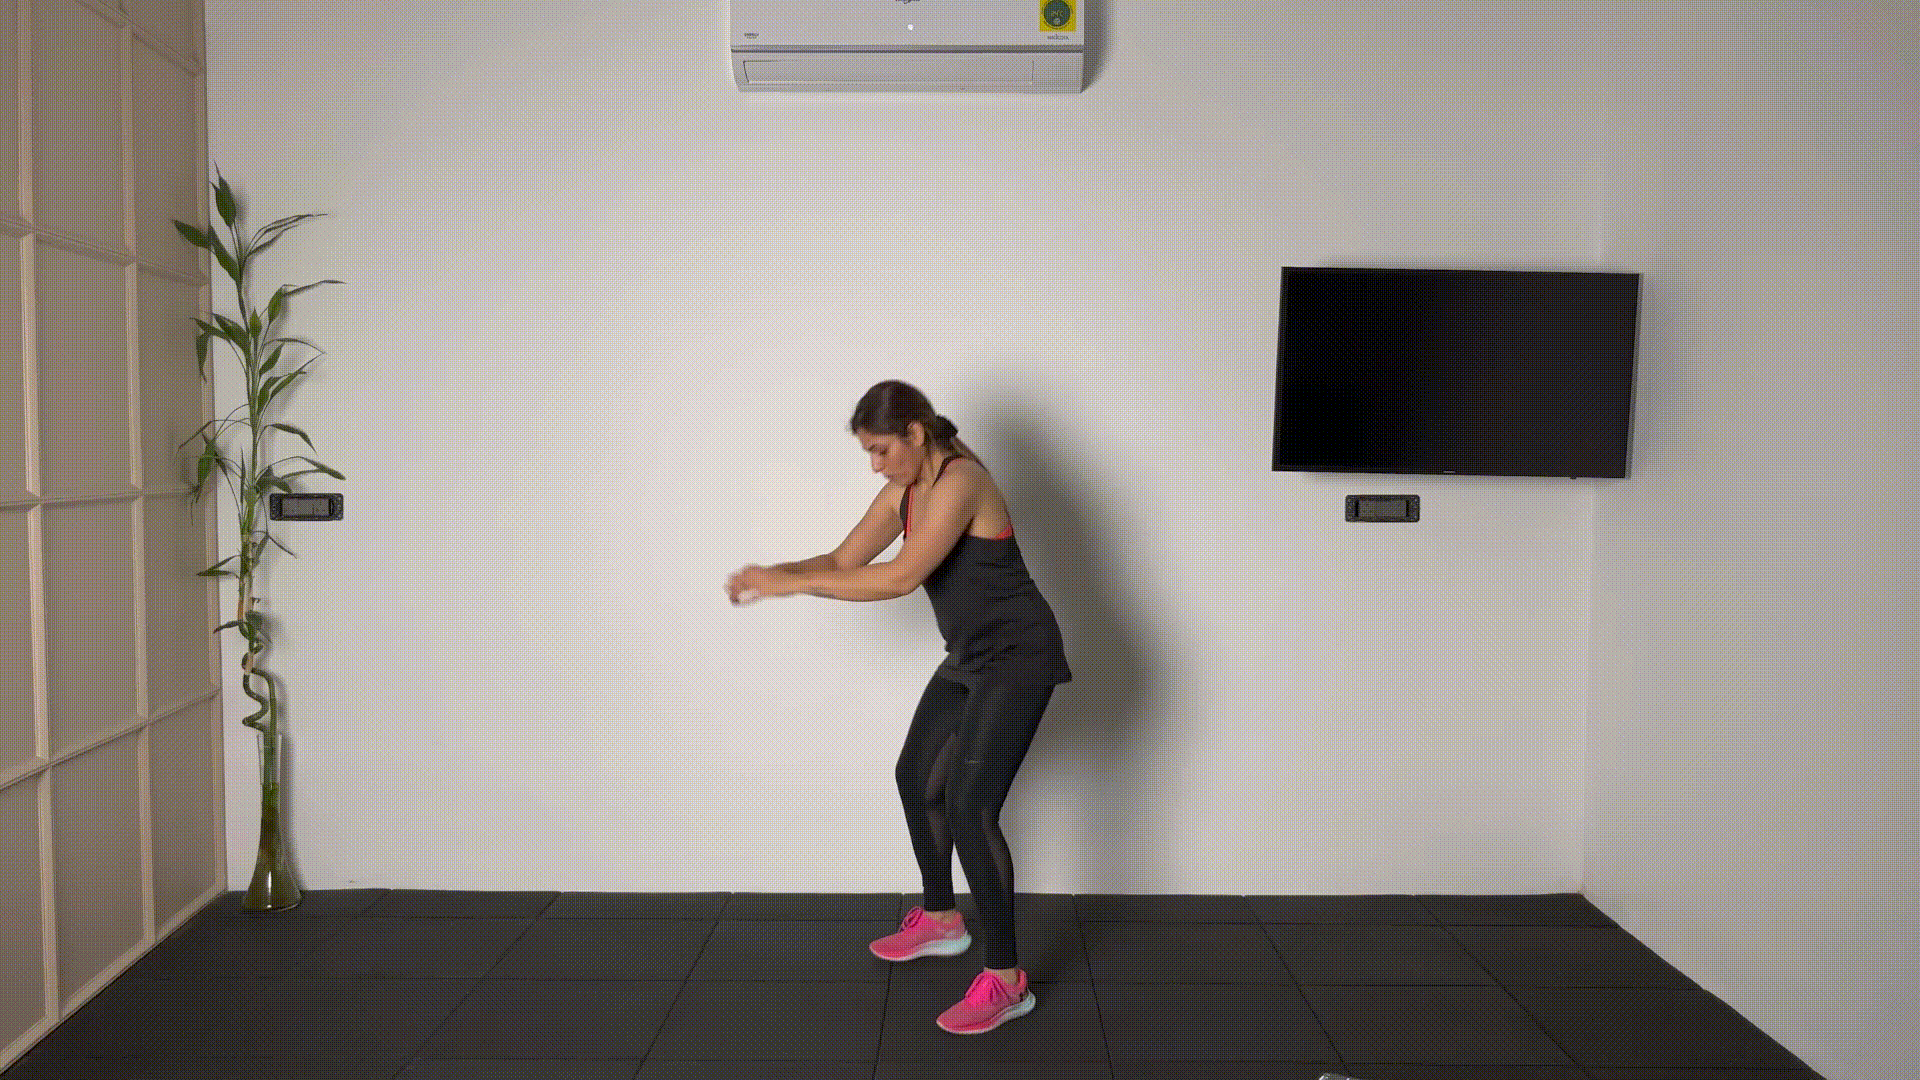 Squat jump cardio